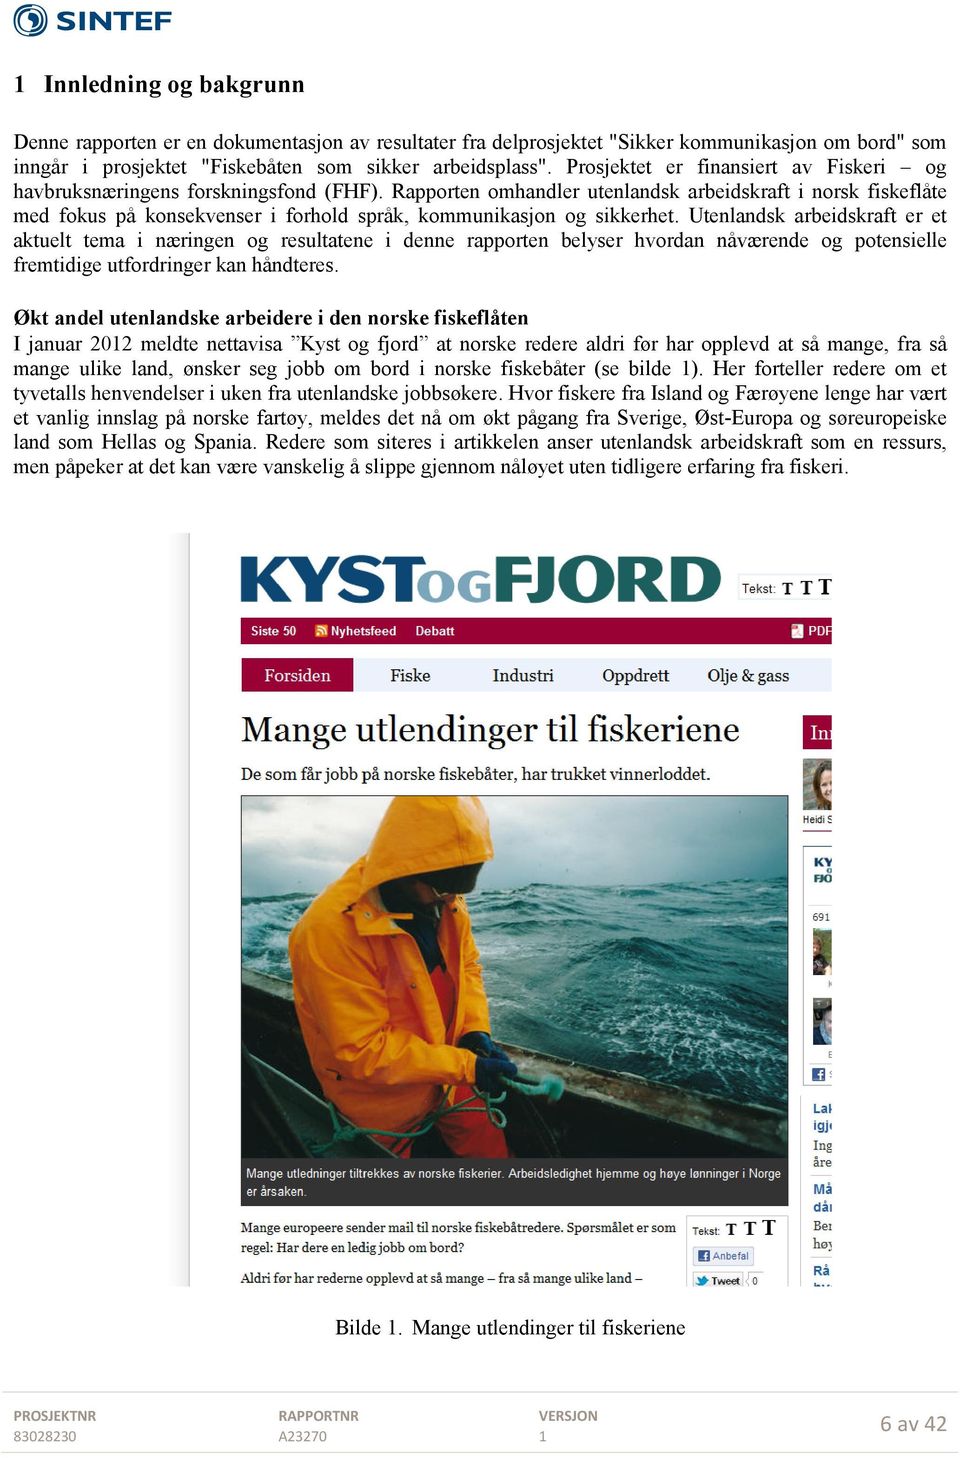 Rapporten omhandler utenlandsk arbeidskraft i norsk fiskeflåte med fokus på konsekvenser i forhold språk, kommunikasjon og sikkerhet.